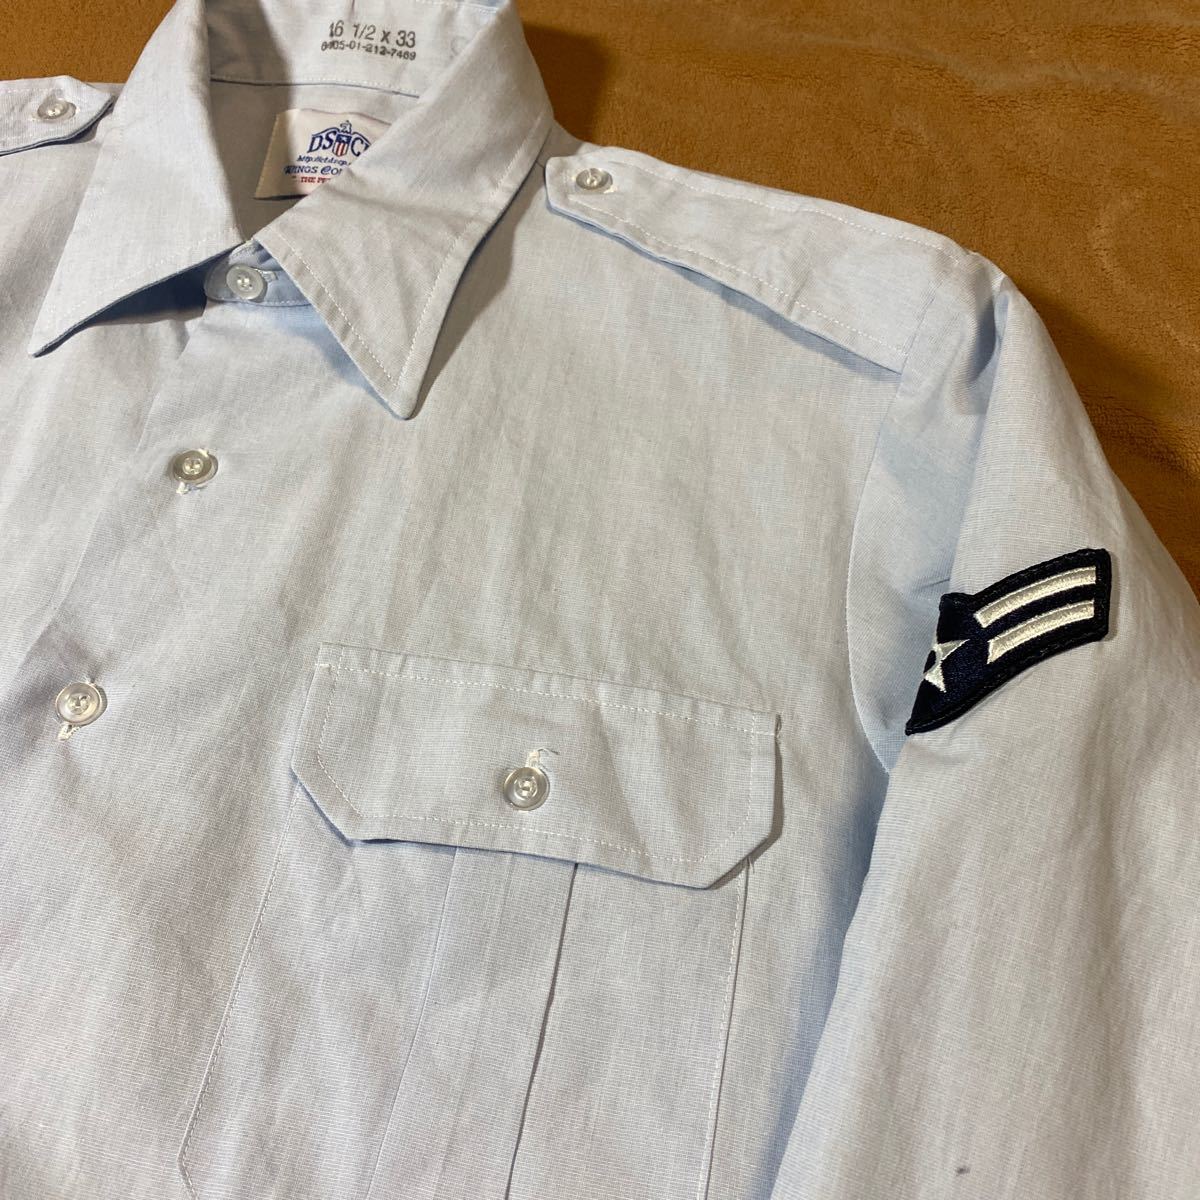 米空軍 ドレスシャツ メンズ ミリタリー 長袖 DSCP ライトブルー系 サイズ16 1/2 古着_画像9